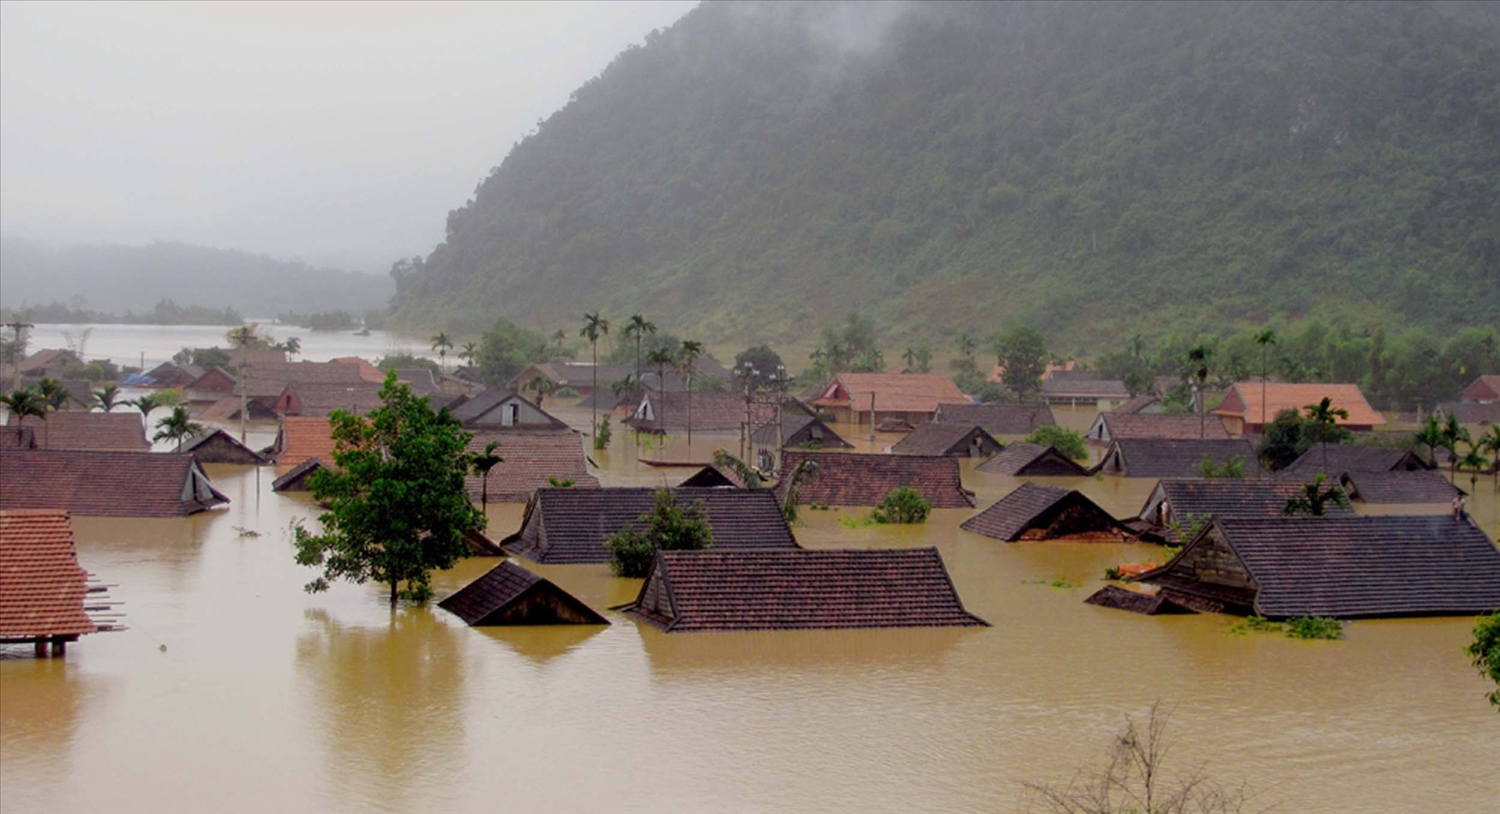  Trận lũ lịch sử năm 2010 với mức nước dâng cao 12m đã nhấn chìm hầu hết các ngôi nhà ở Tân Hoá, người dân phải sơ tán lên các hang đá và vách núi để trú ẩn chờ nước rút.